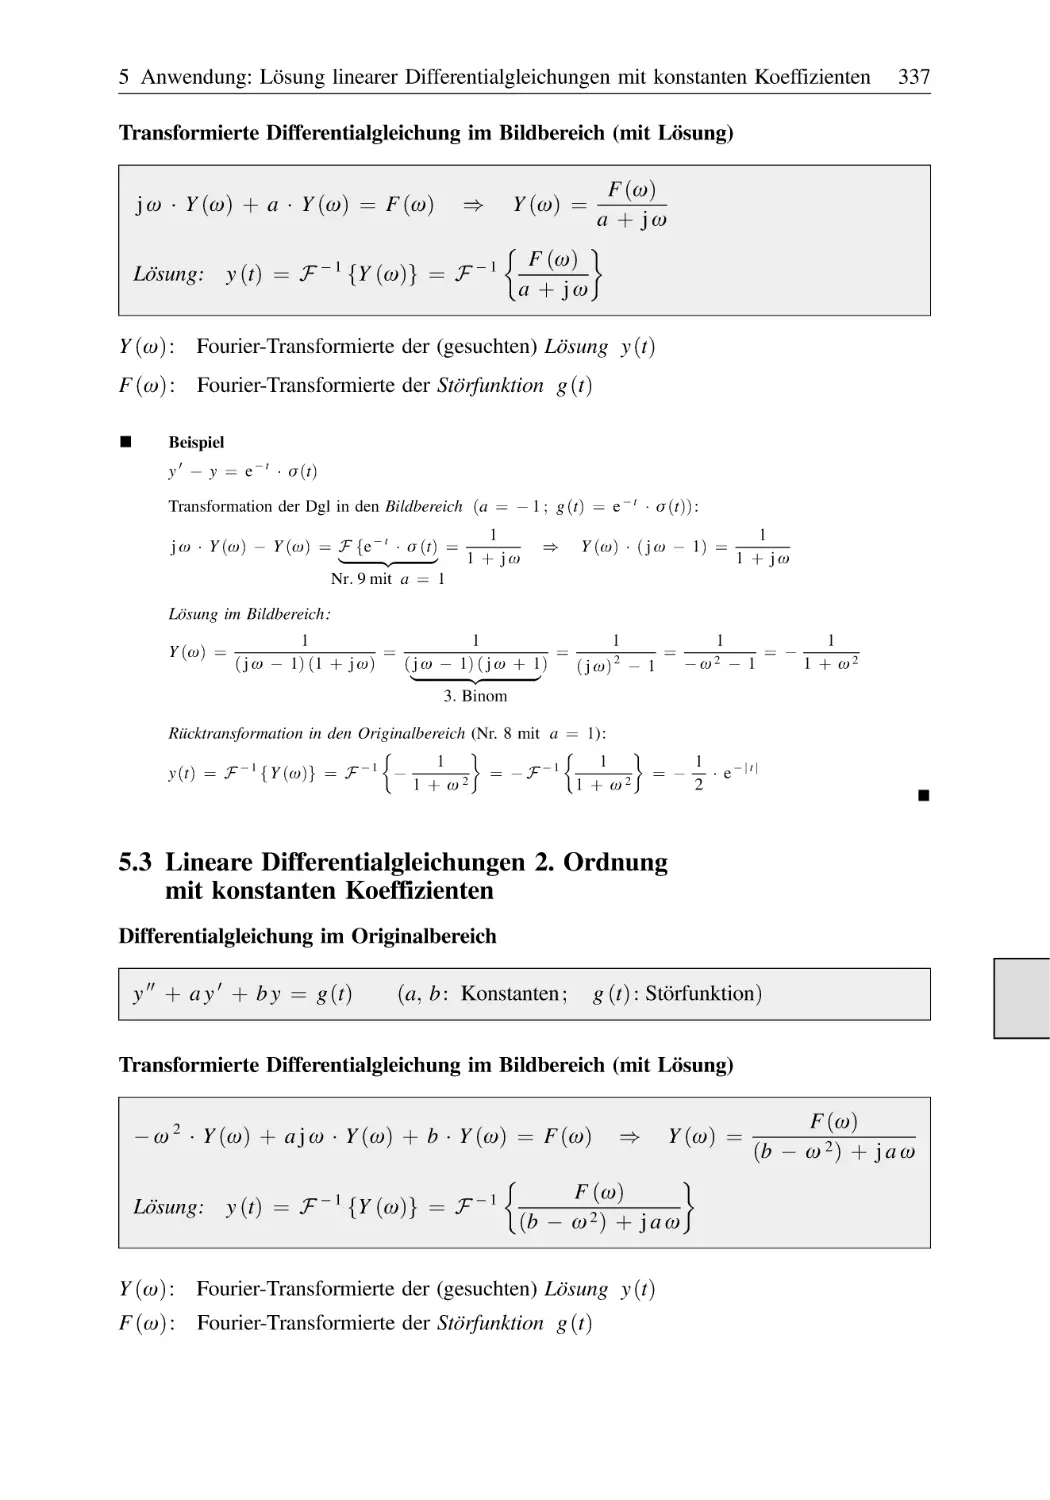 5.3 Lineare Differentialgleichungen 2. Ordnung mit konstanten Koeffizienten